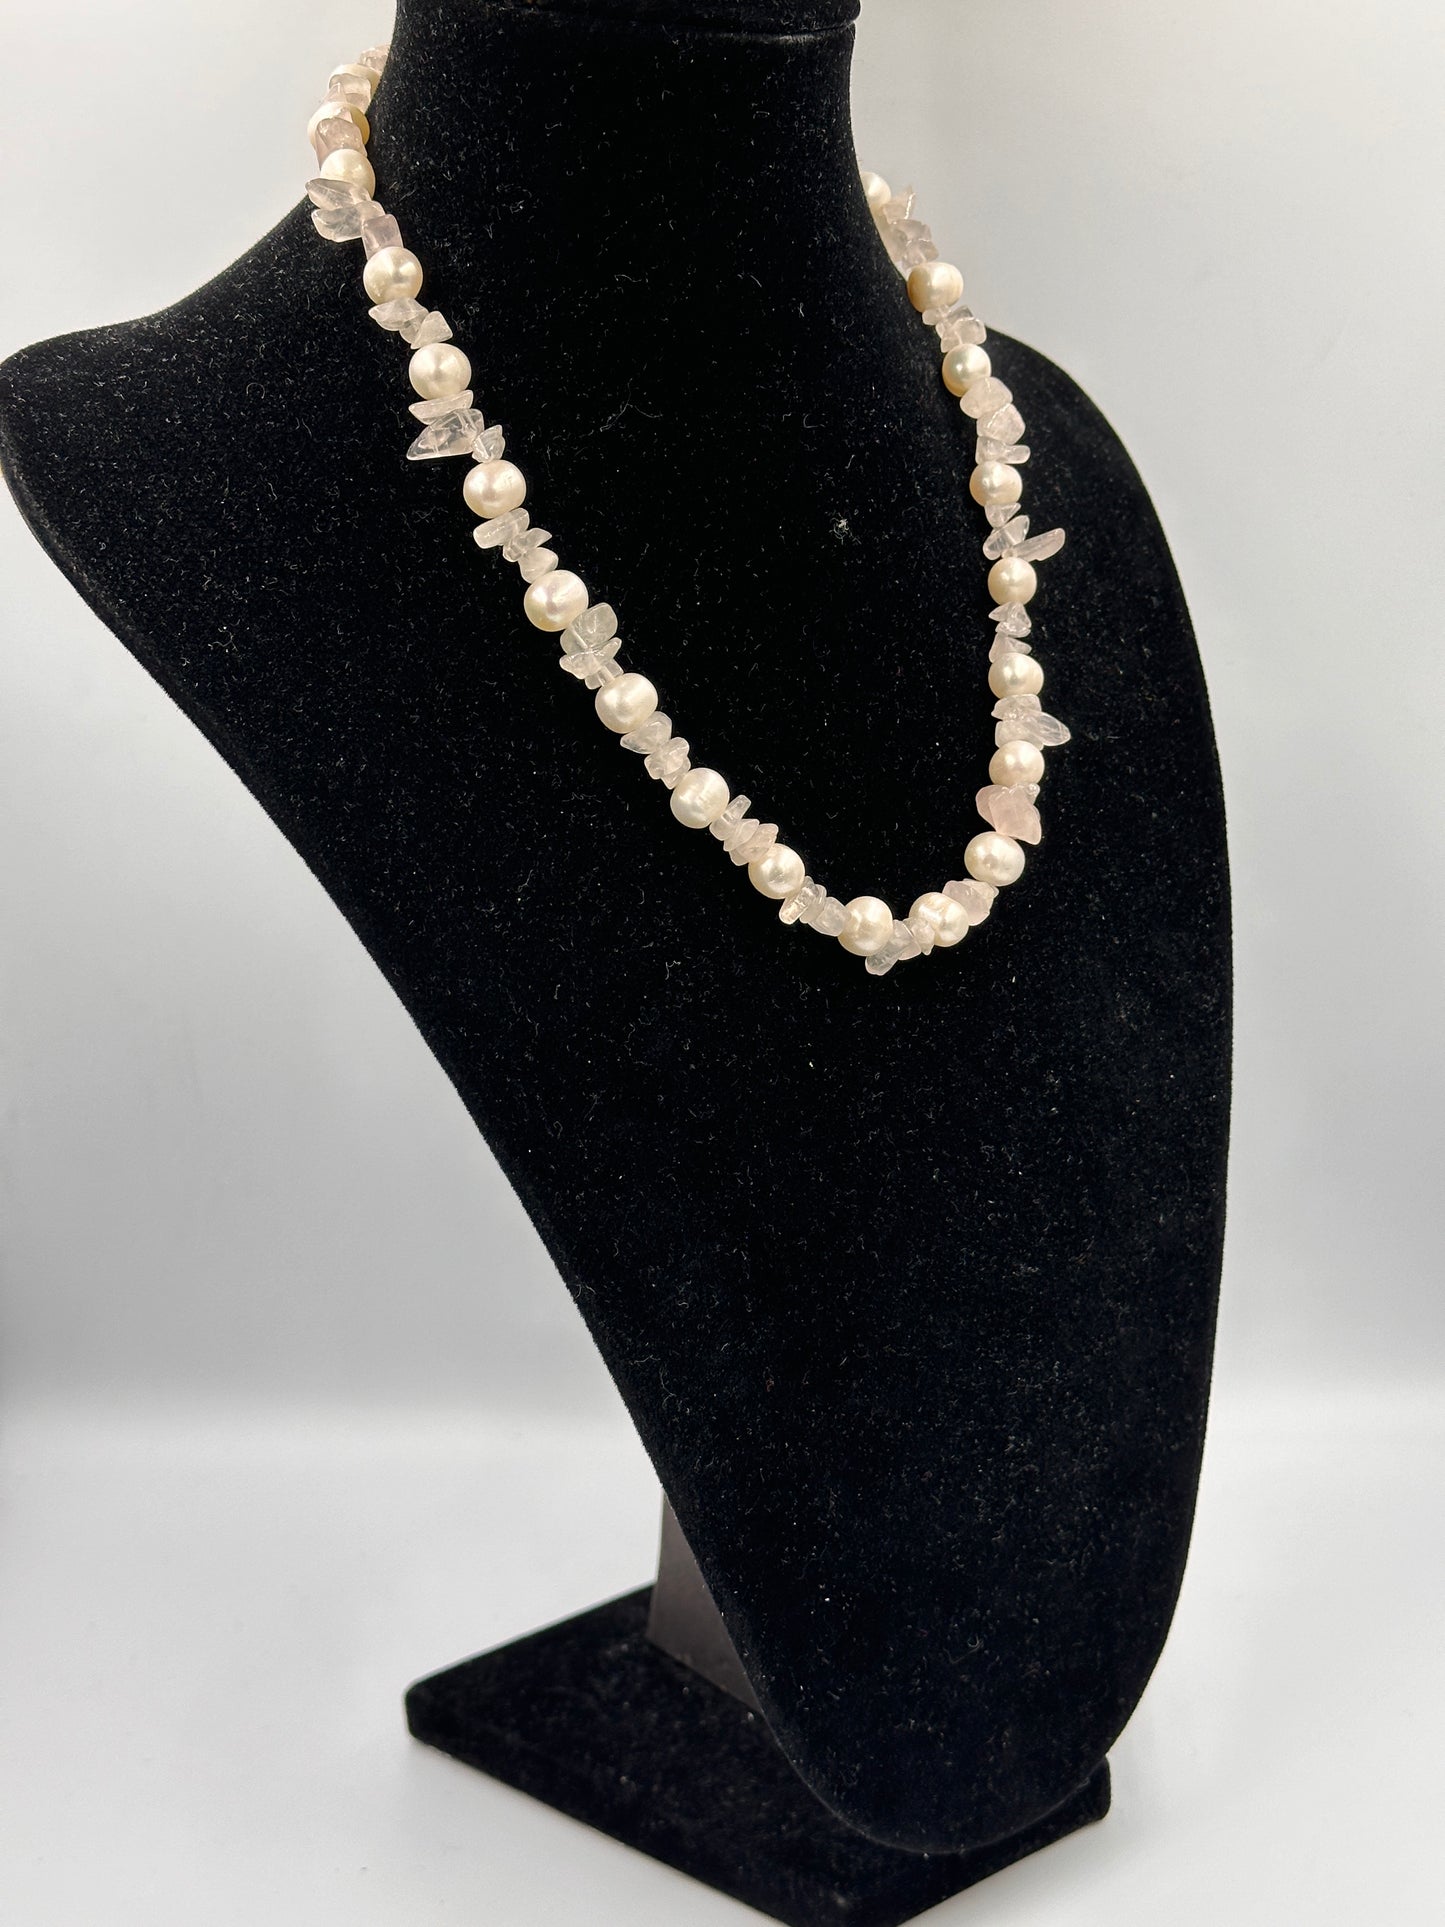 Vintage 80er Jahre Rosenquarz und Rosa Echte Perlen Halskette